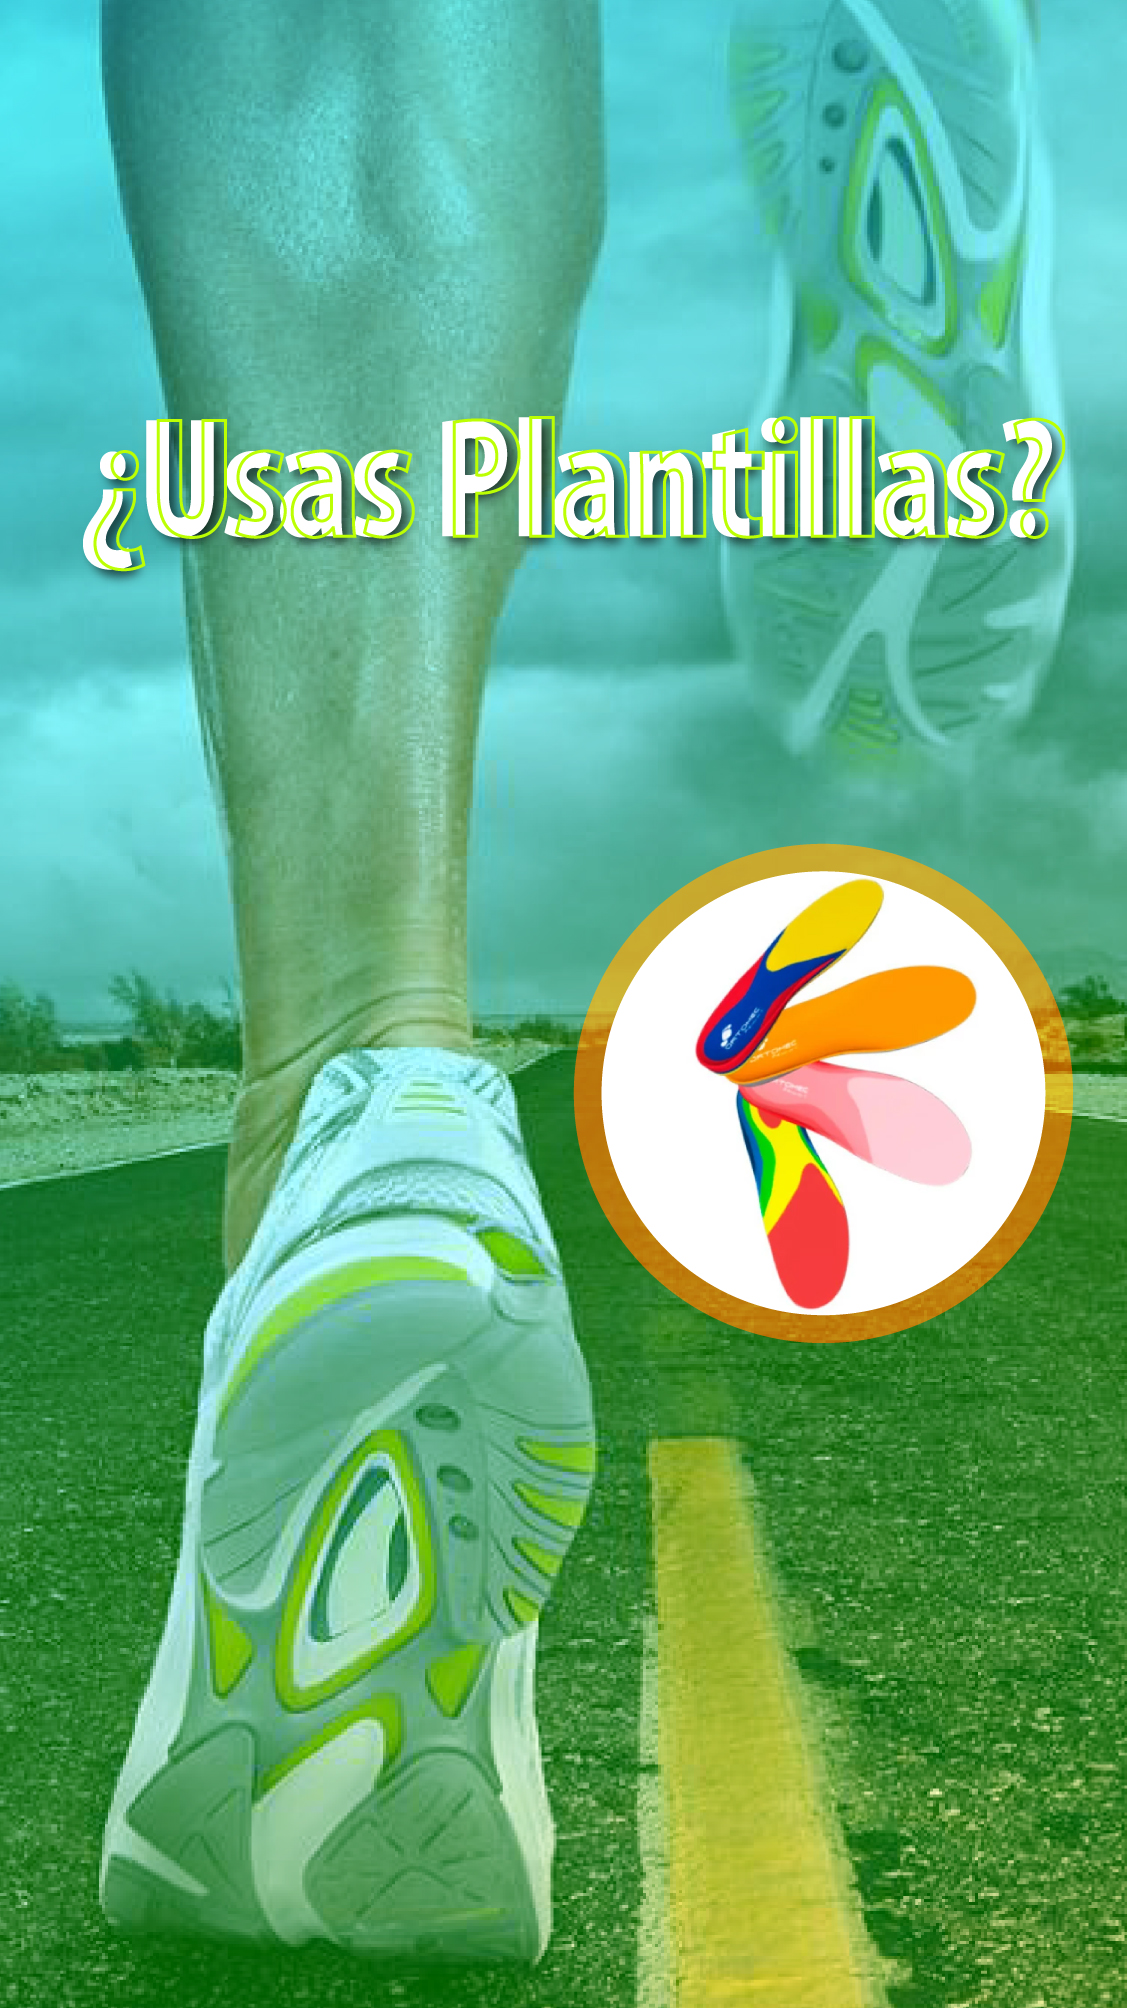 Plantillas Deportivas en Bogotá